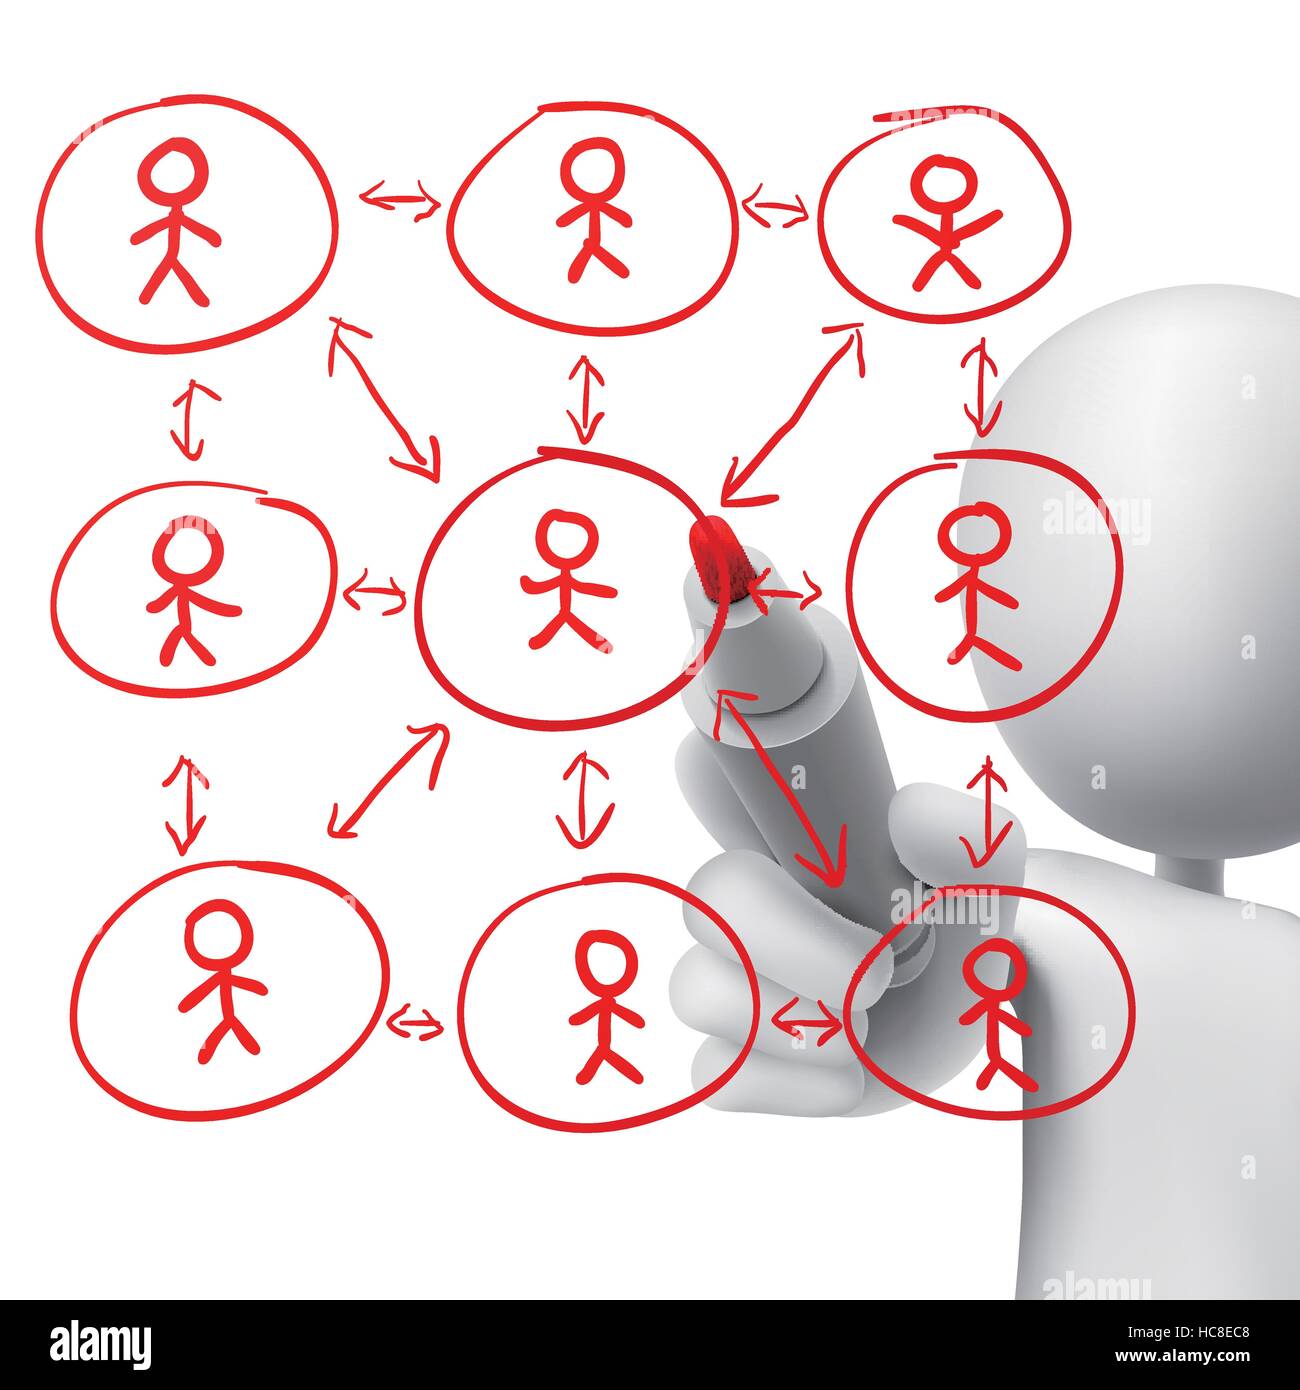 Flussdiagramm für ein soziales Netzwerk, gezeichnet von einem Mann auf weißem Hintergrund Stock Vektor